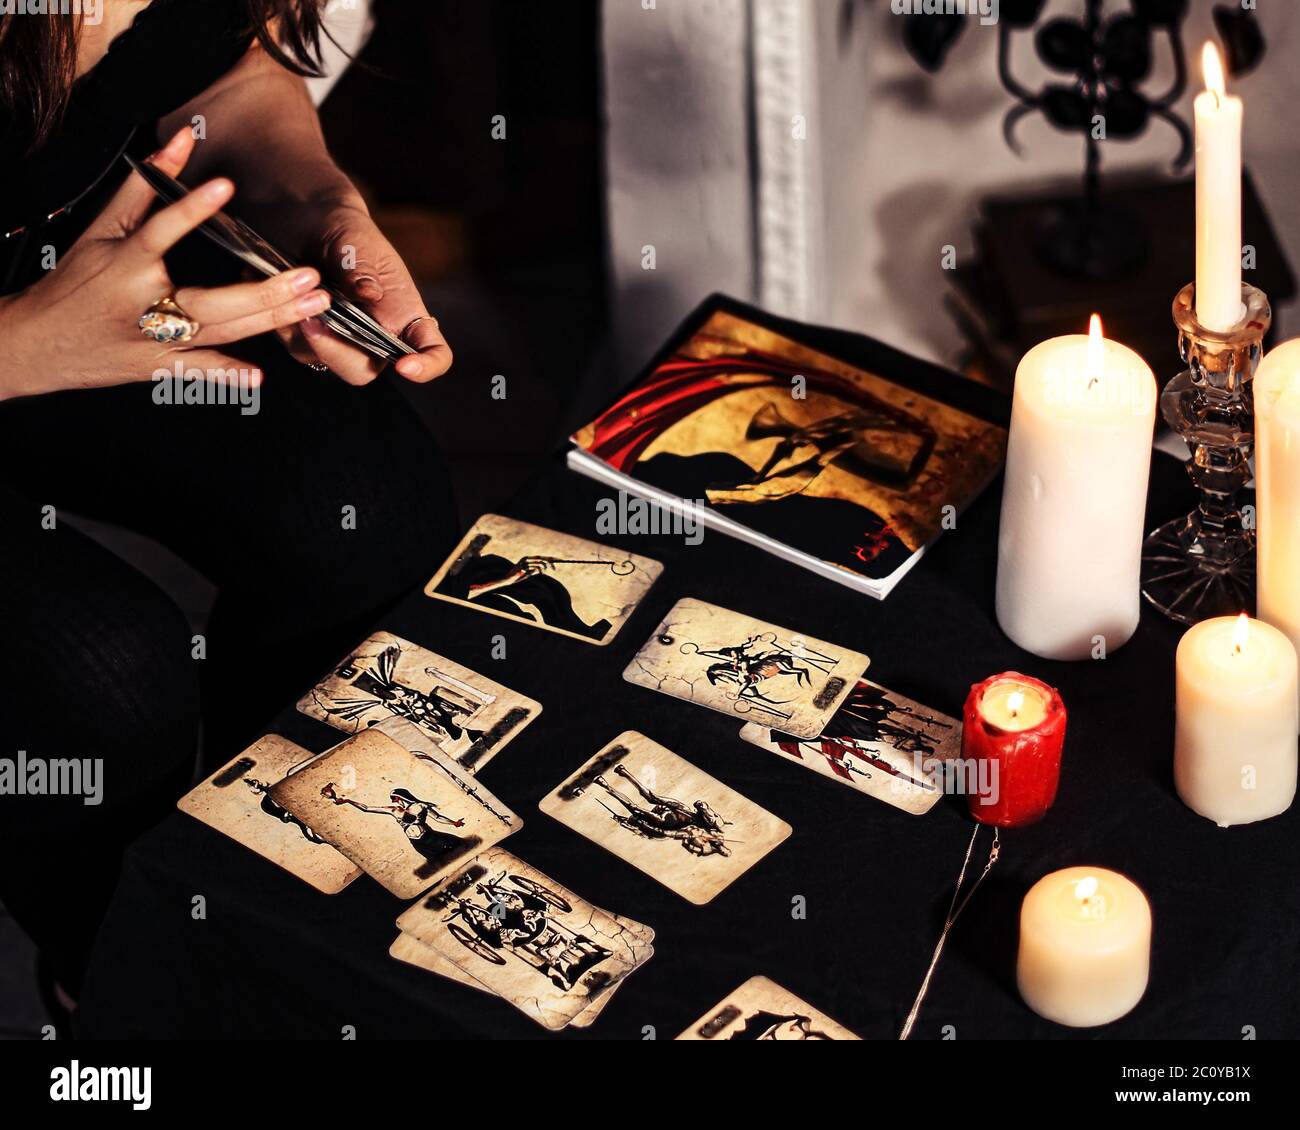 Dunkle flache Laie von Hexengegenständen. Tarot-Karten verteilt. Vorhersage Wicca, okkult, esoterisch, Weissagung und mistic Konzept. Magische Rituale. Stockfoto